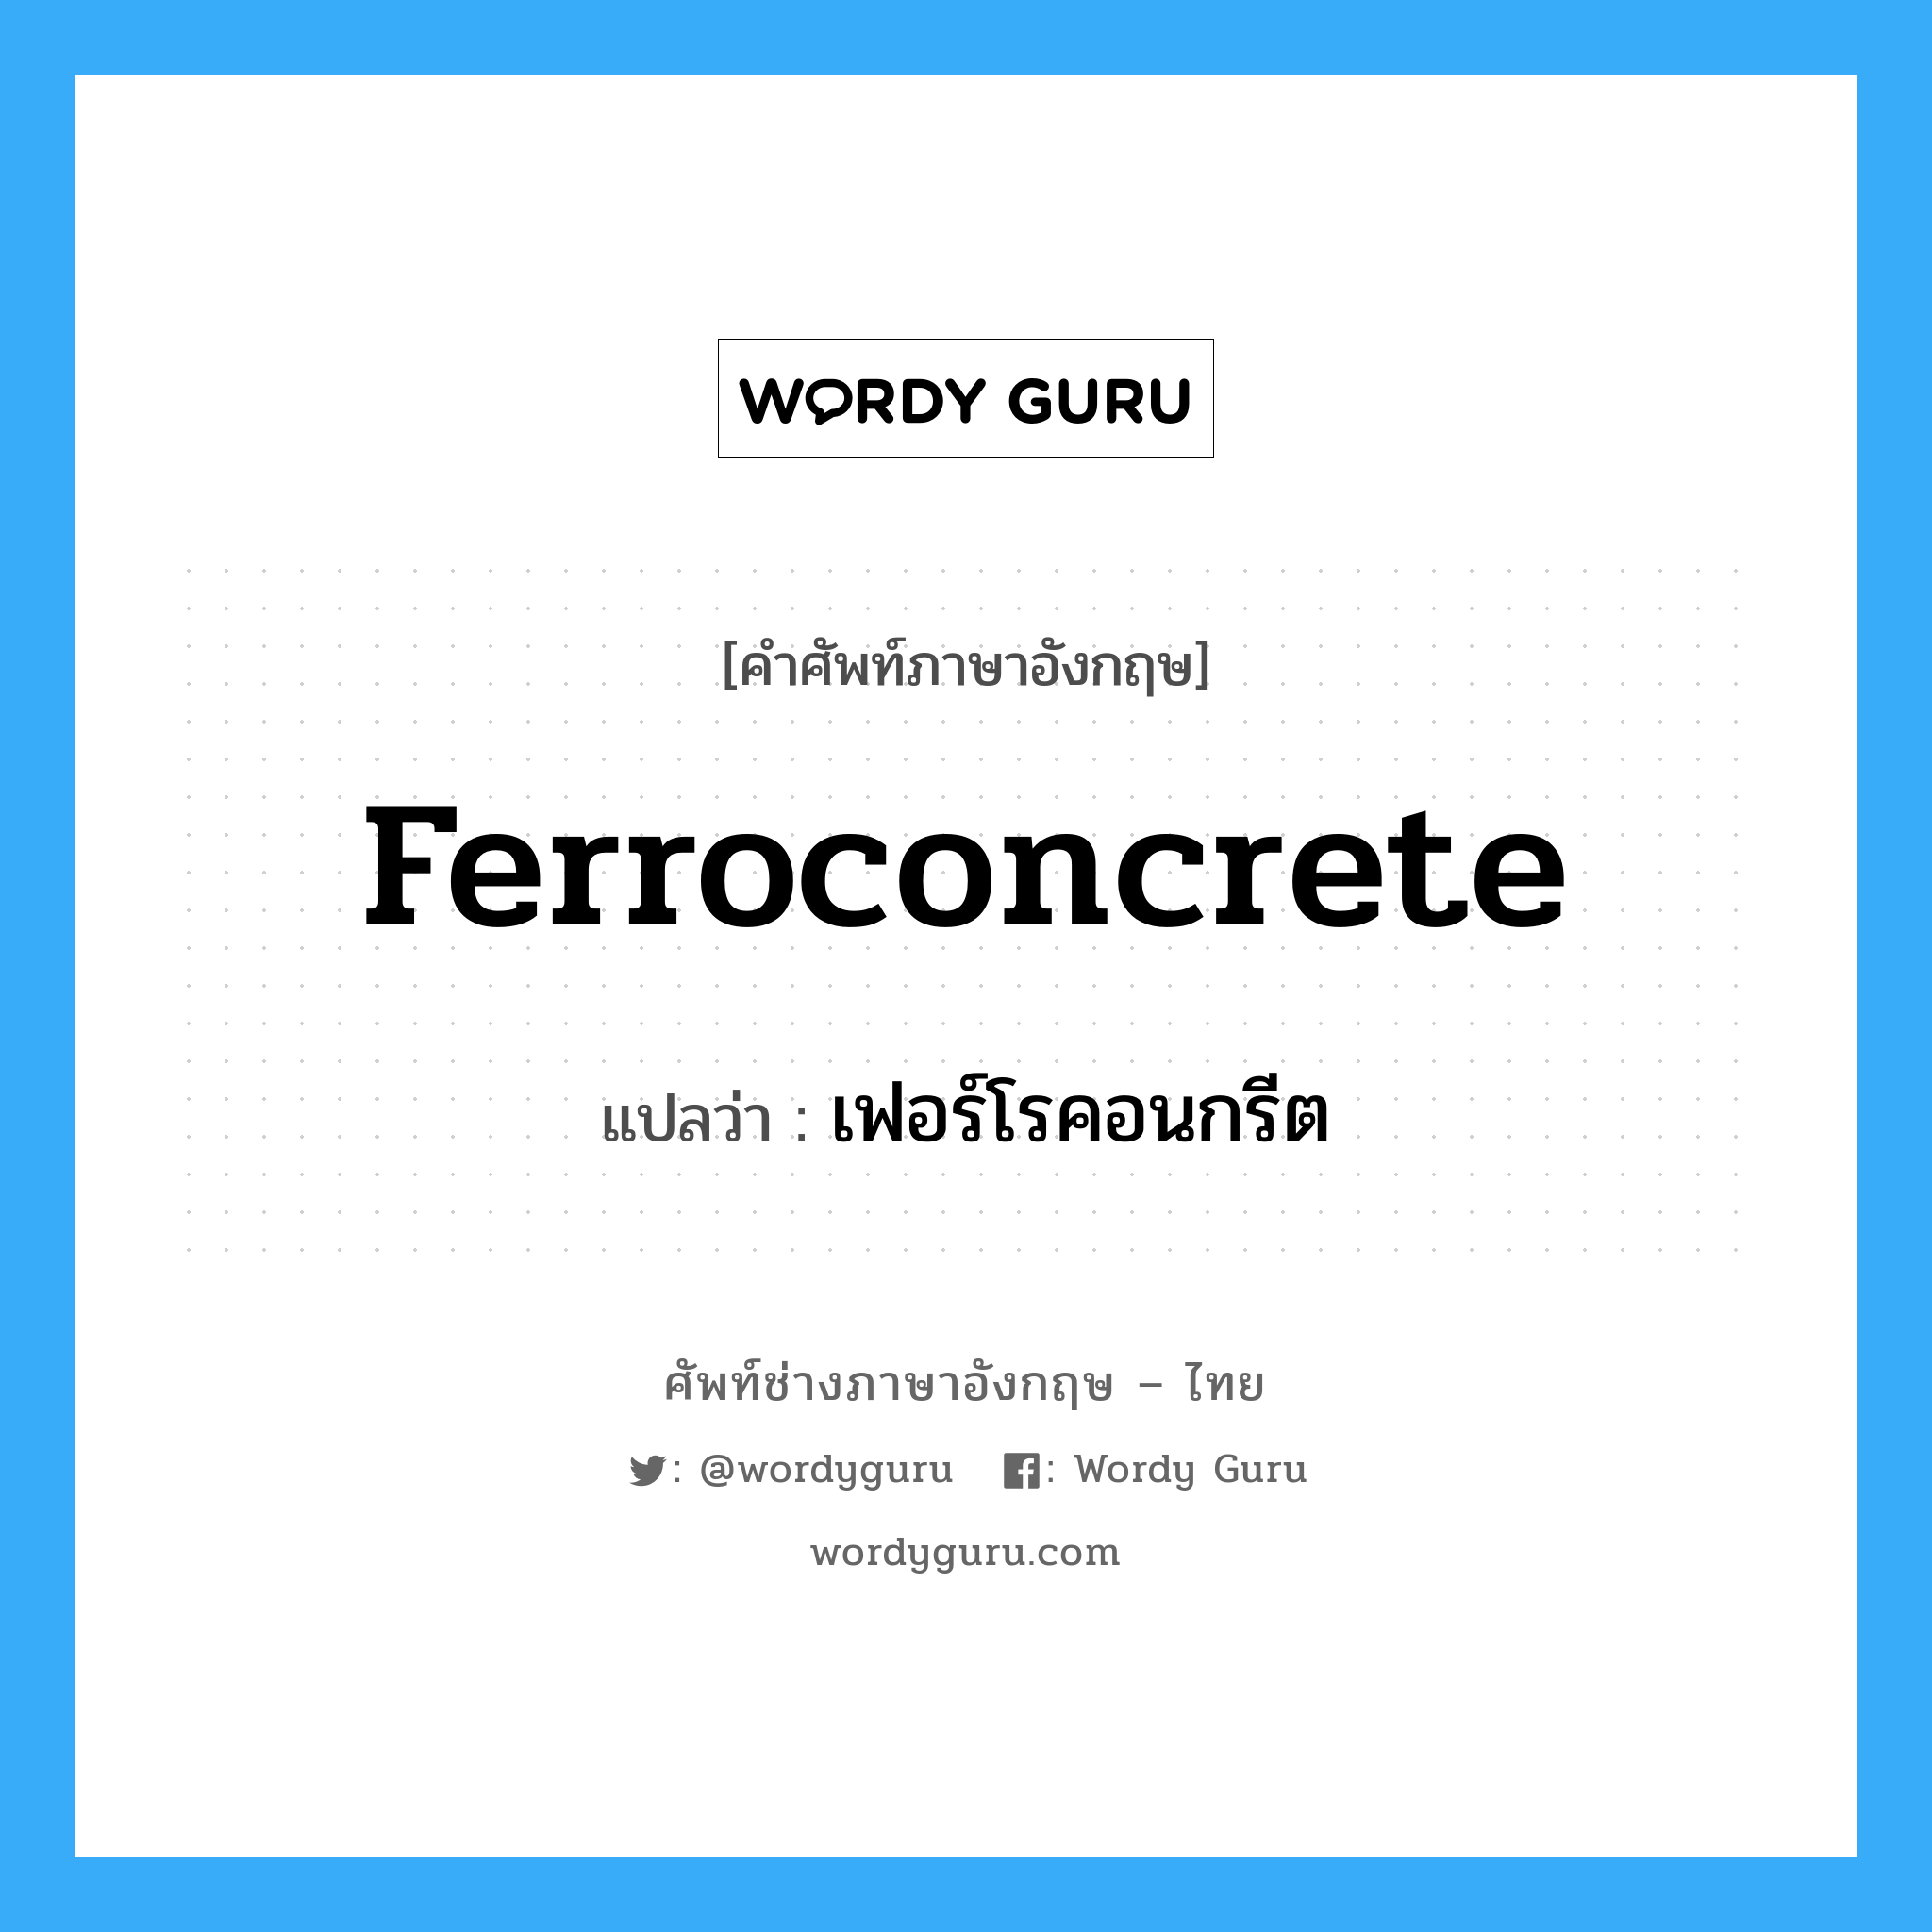 ferroconcrete แปลว่า?, คำศัพท์ช่างภาษาอังกฤษ - ไทย ferroconcrete คำศัพท์ภาษาอังกฤษ ferroconcrete แปลว่า เฟอร์โรคอนกรีต